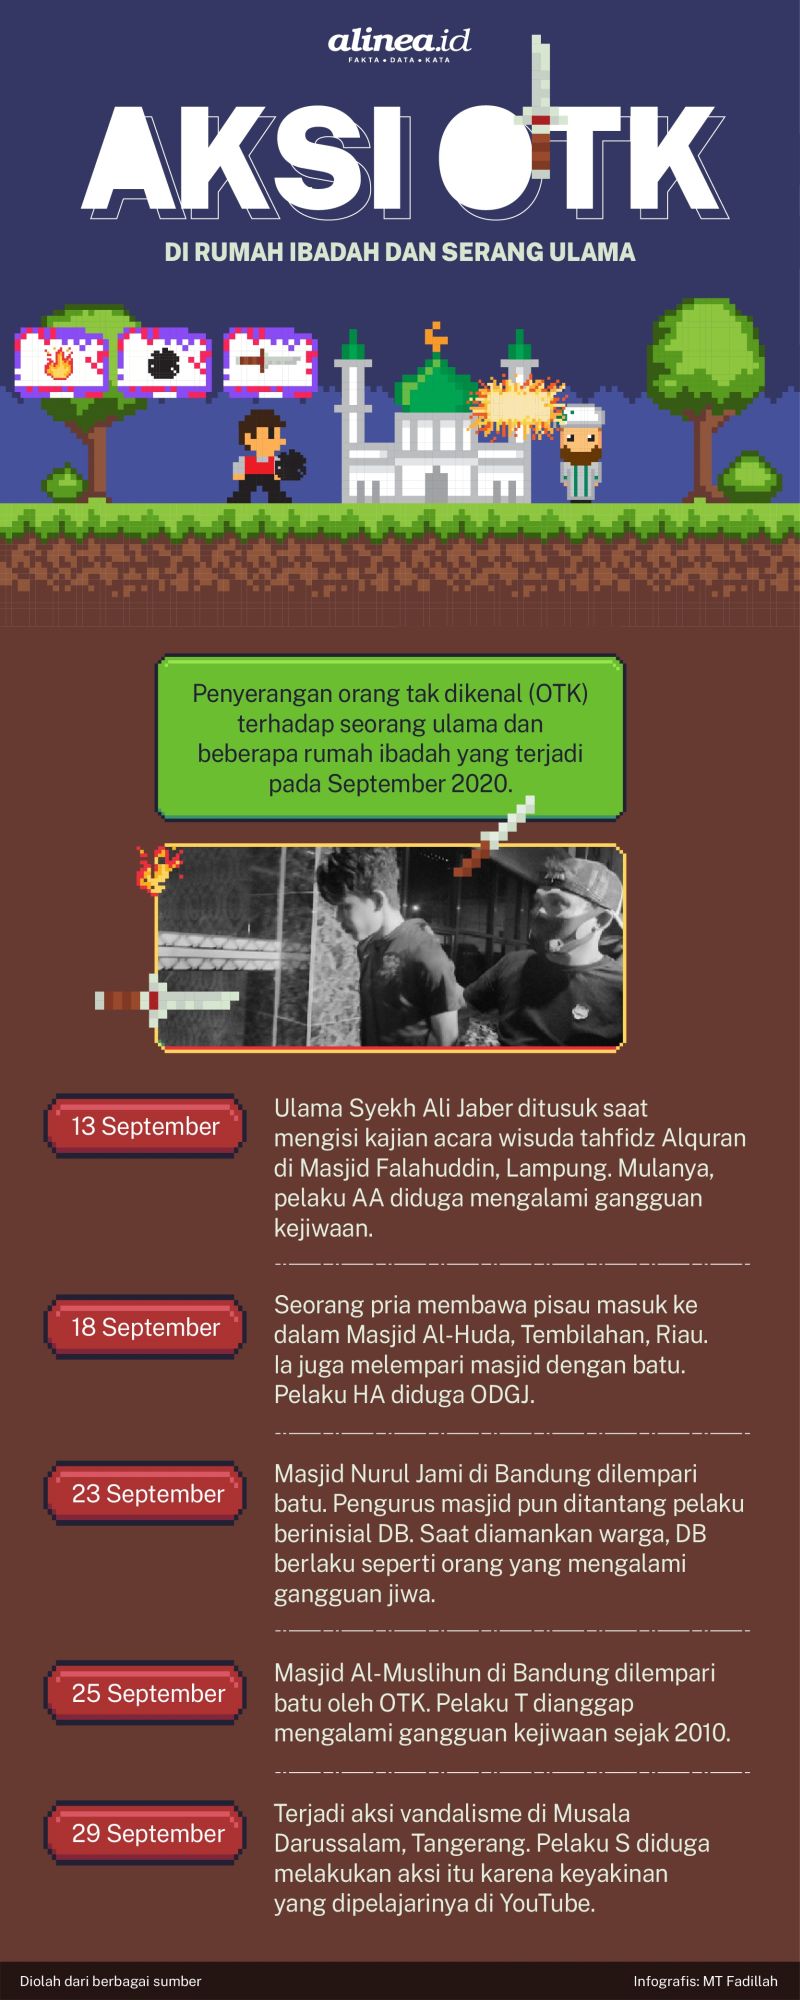 Infografik serangan di masjid dan ulama. Alinea.id/MT Fadillah.